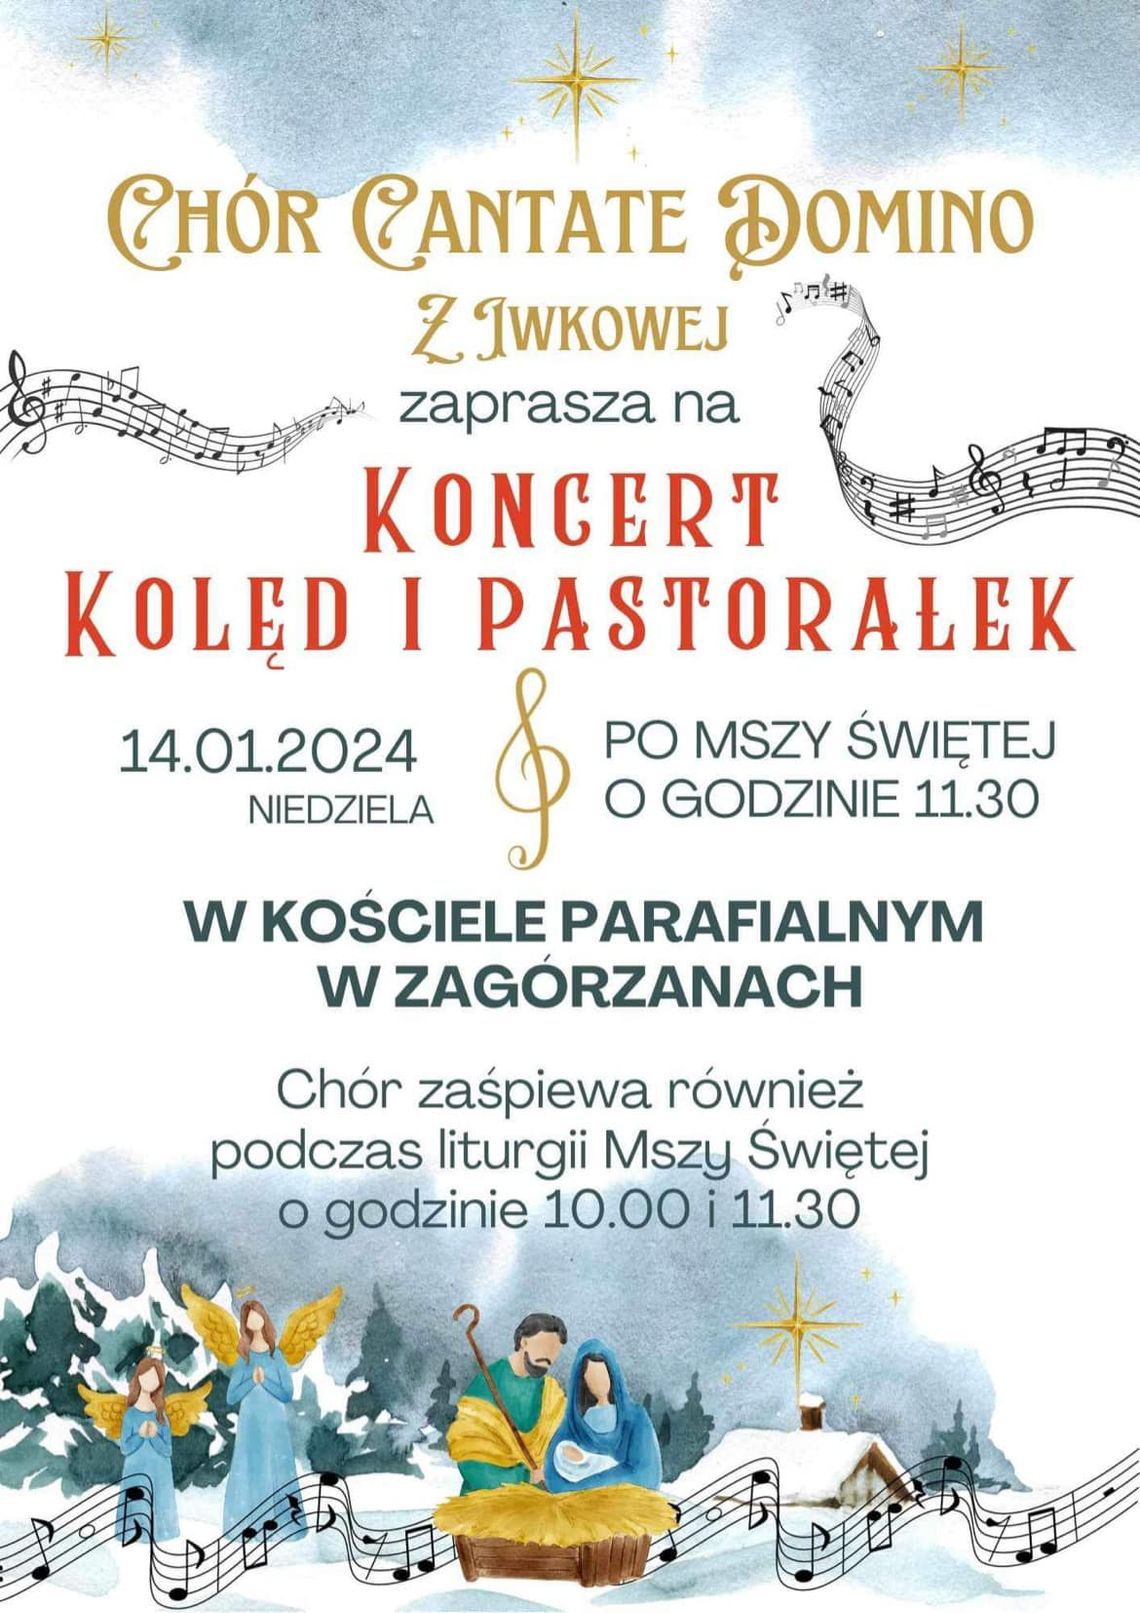 Koncert Kolęd i Pastorałek z Chórem Cantate Domine | halogorlice.info